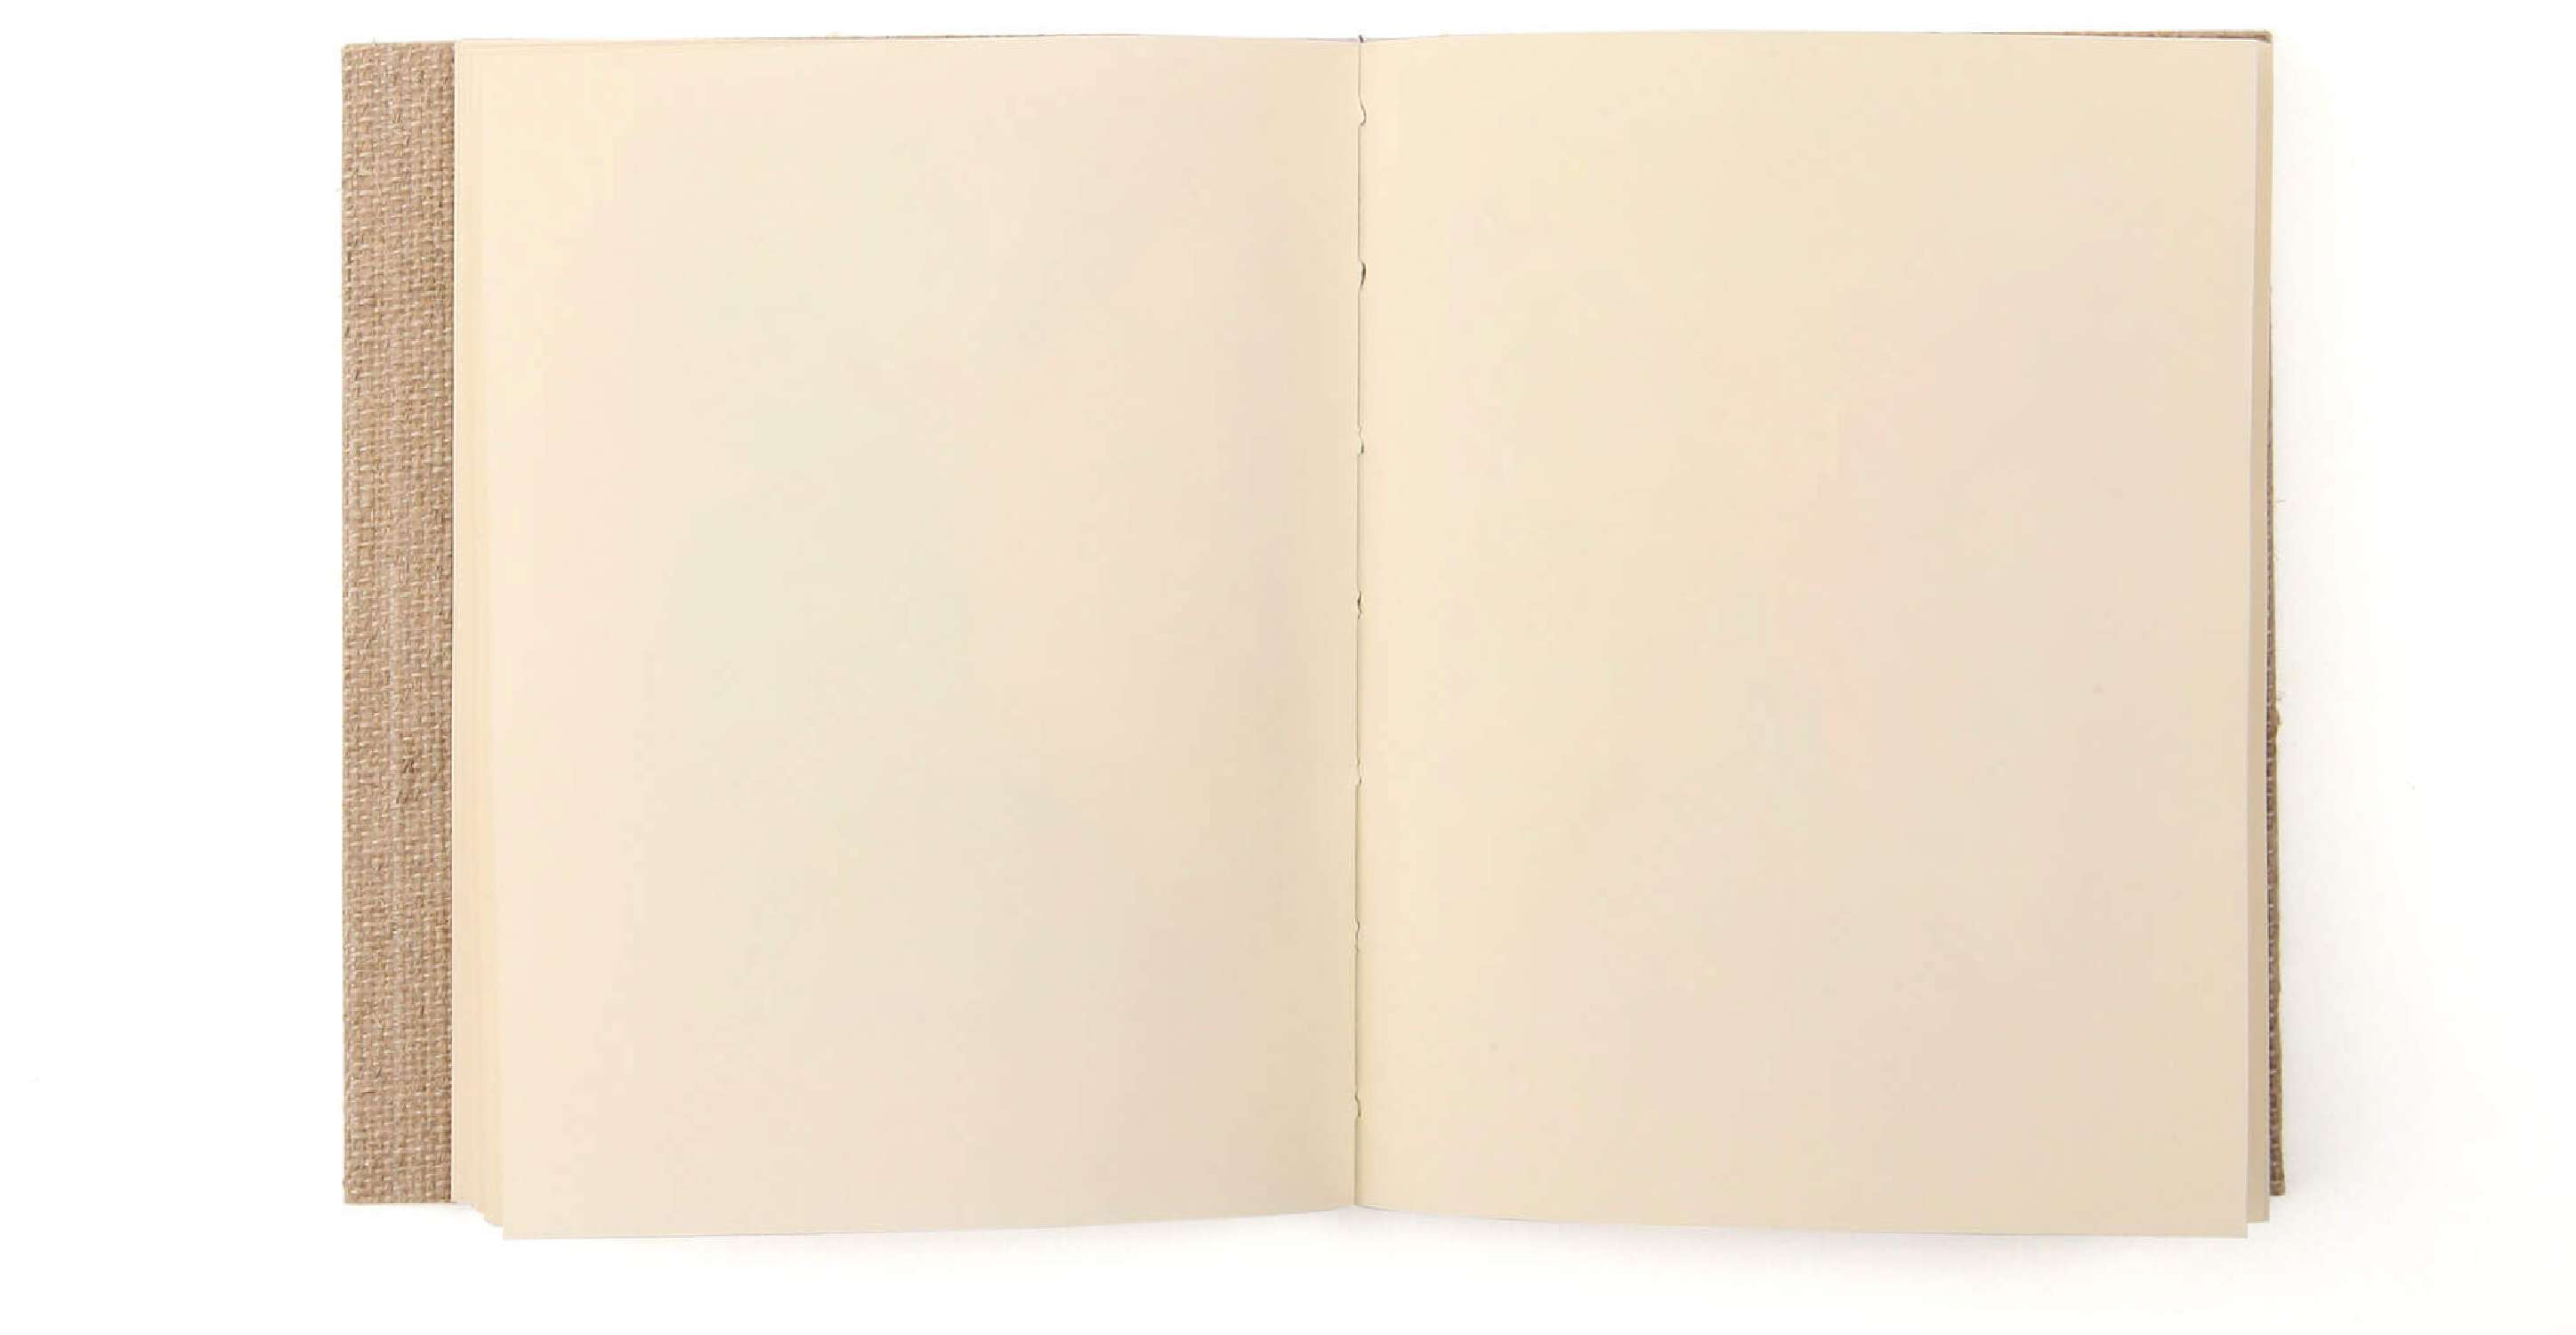 Intérieur du carnet réalisé à partir du livre La Ville, de la collection les cent pages blanches des Éditions cent pages